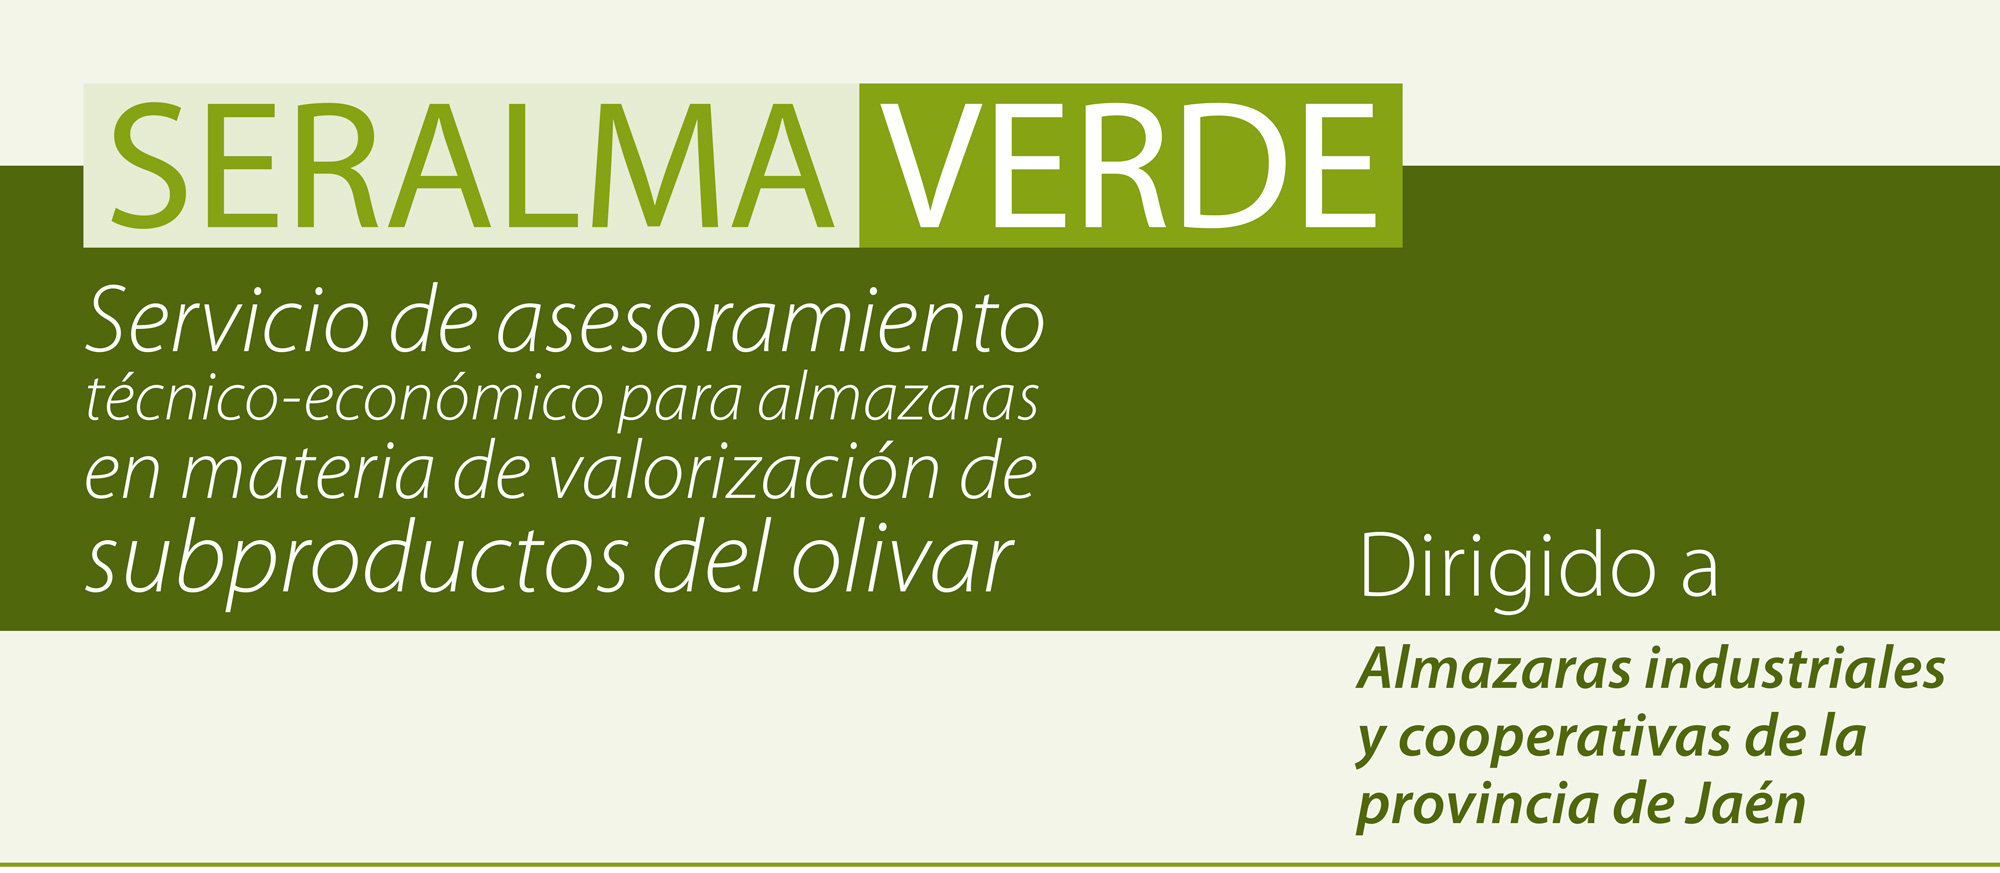 Seralma verde, el nuevo servicio de asesoramiento a almazaras | Ampliar en ventana nueva | Diputación de Jaén